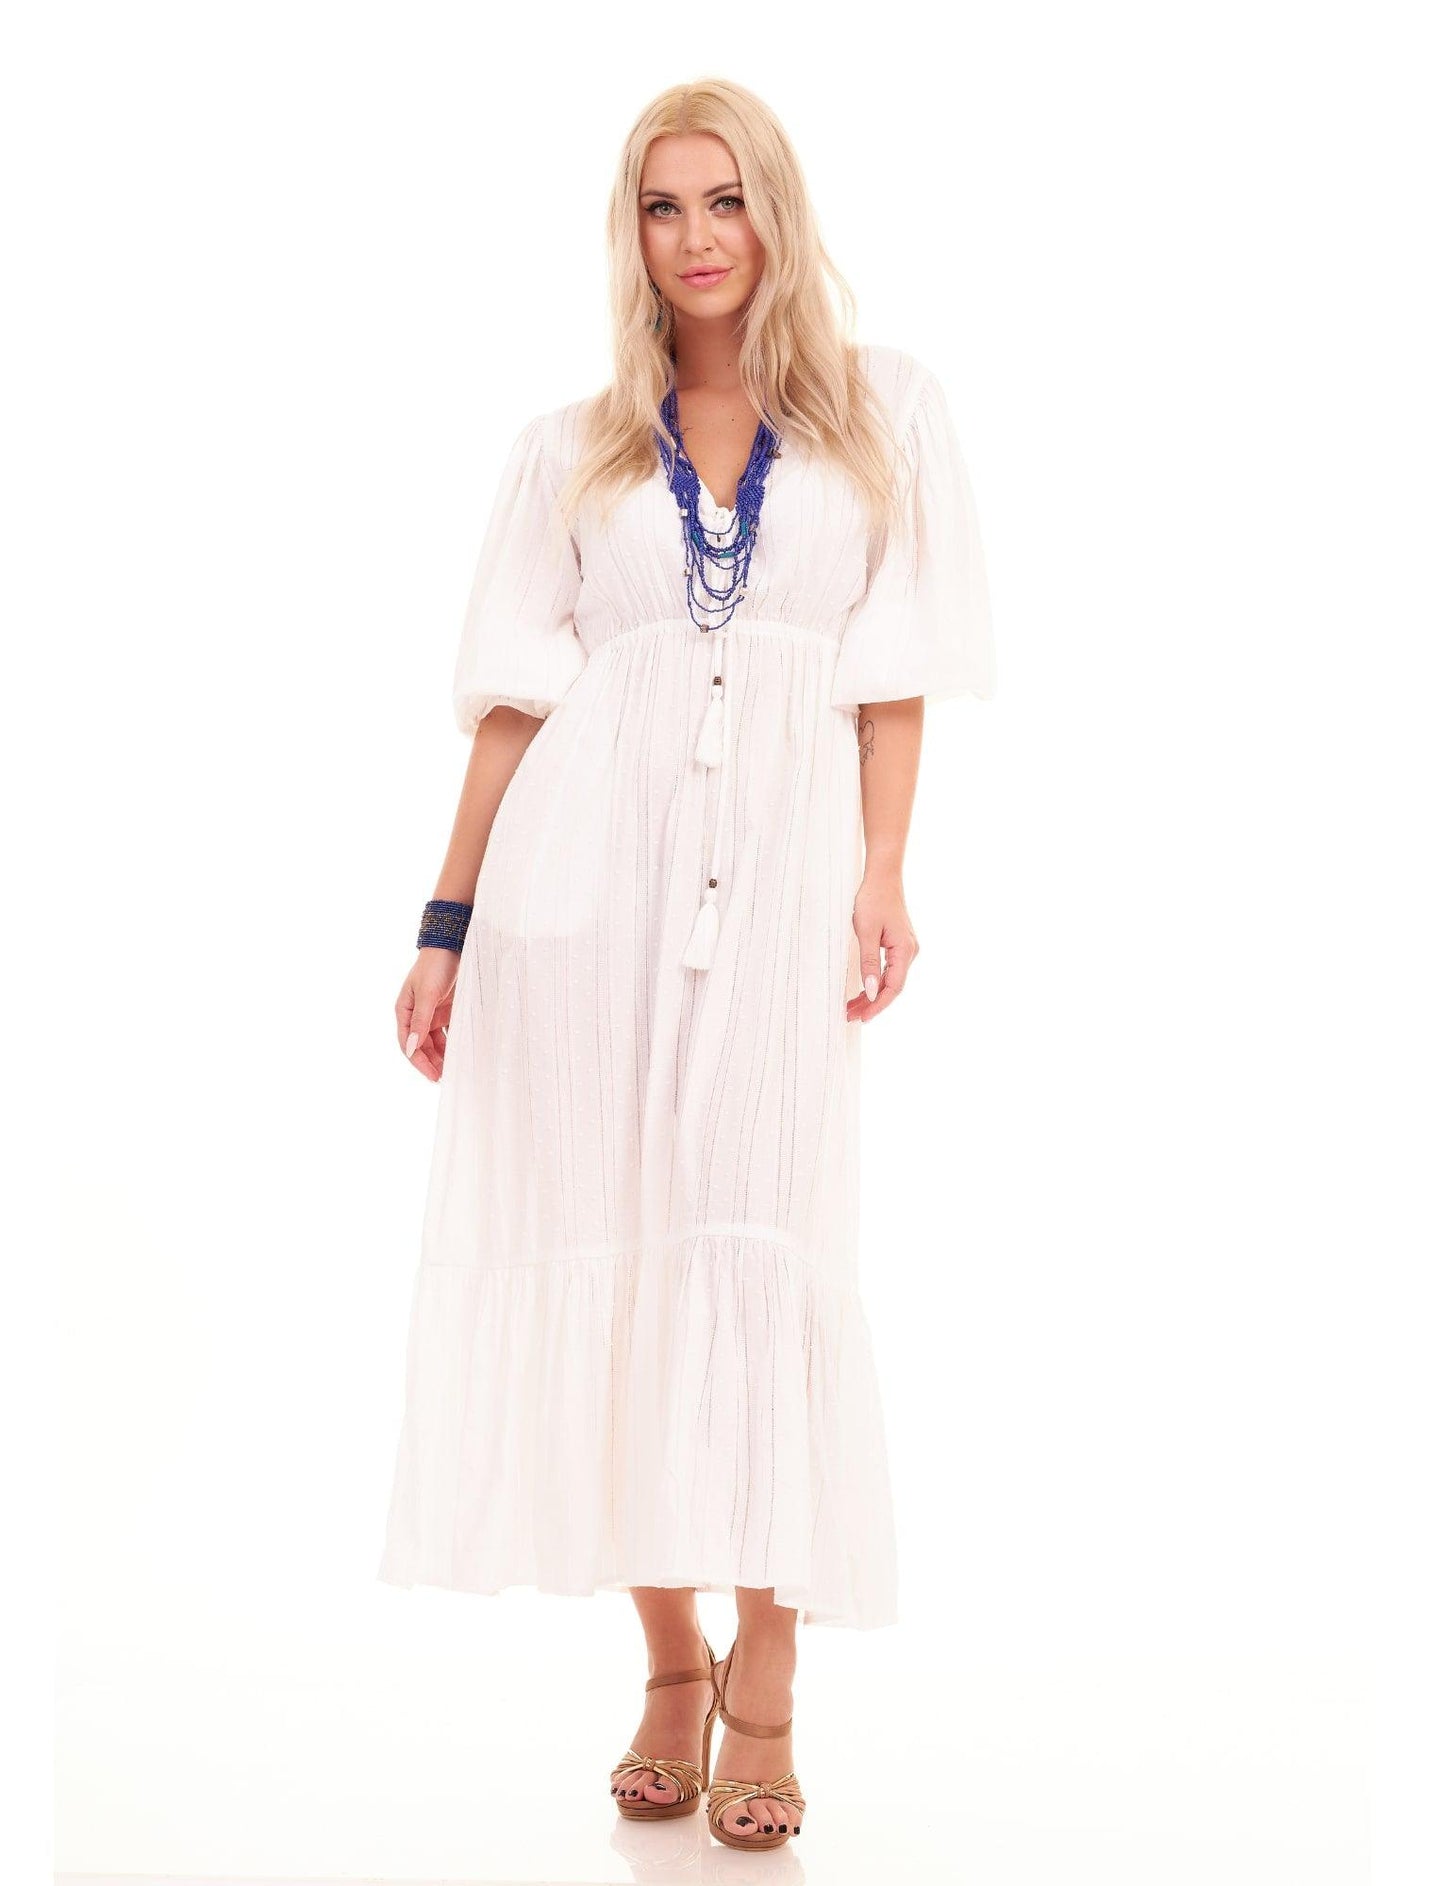 ARABELLA DRESS - WHITE - Woman Dress - Acqua Bonita